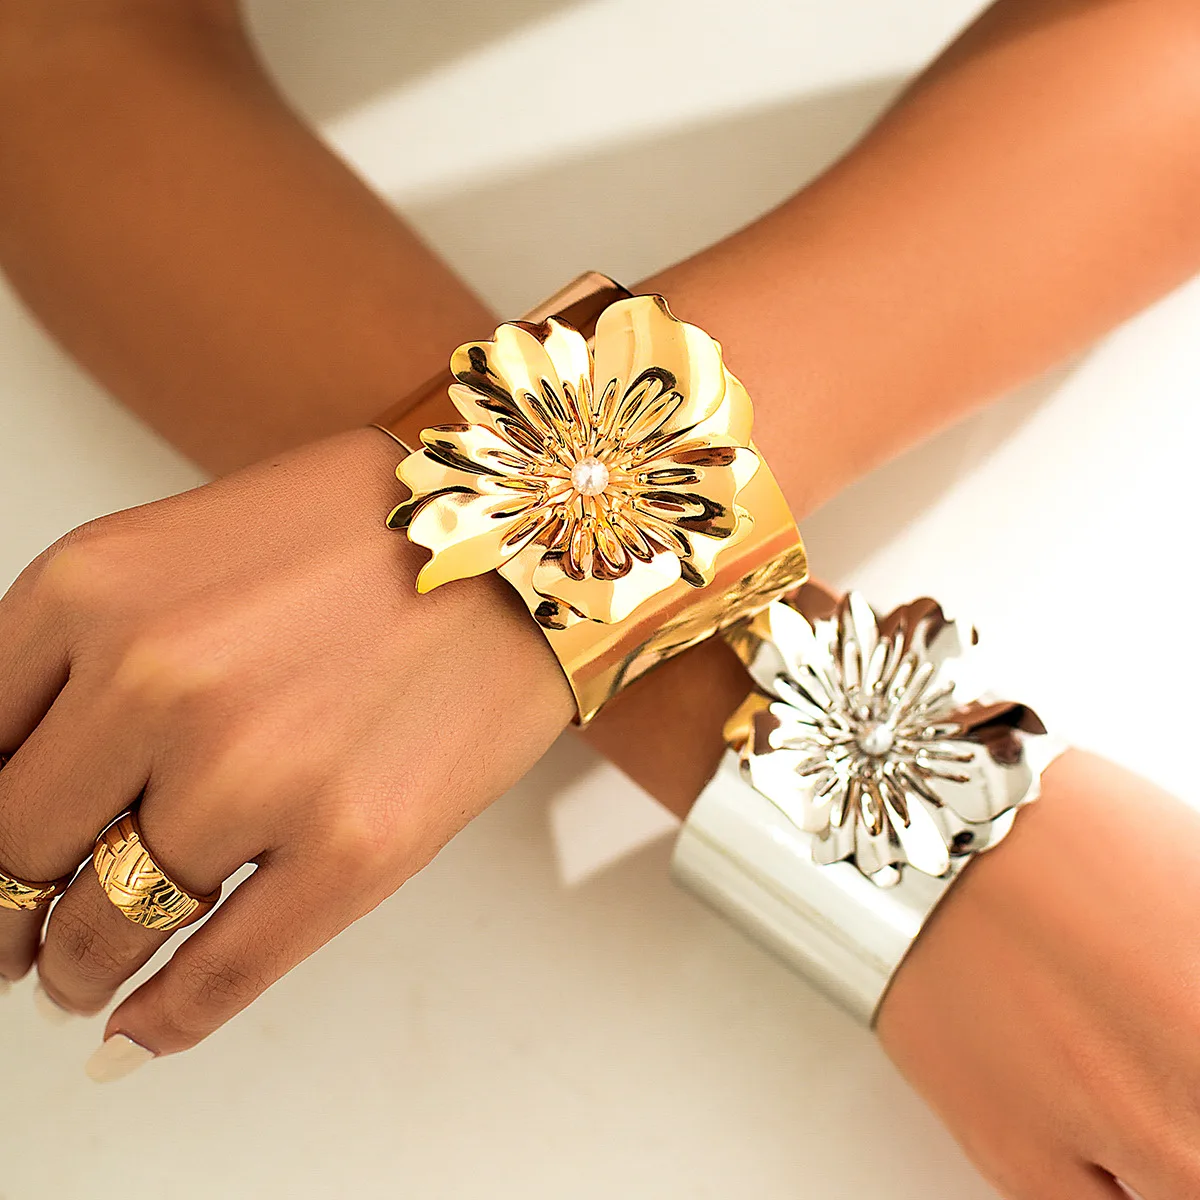 

DIEZI Преувеличенные Браслеты в стиле панк золотого и серебряного цветов розы для женщин винтажные новые браслеты в стиле бохо модные широкие браслеты ювелирные изделия